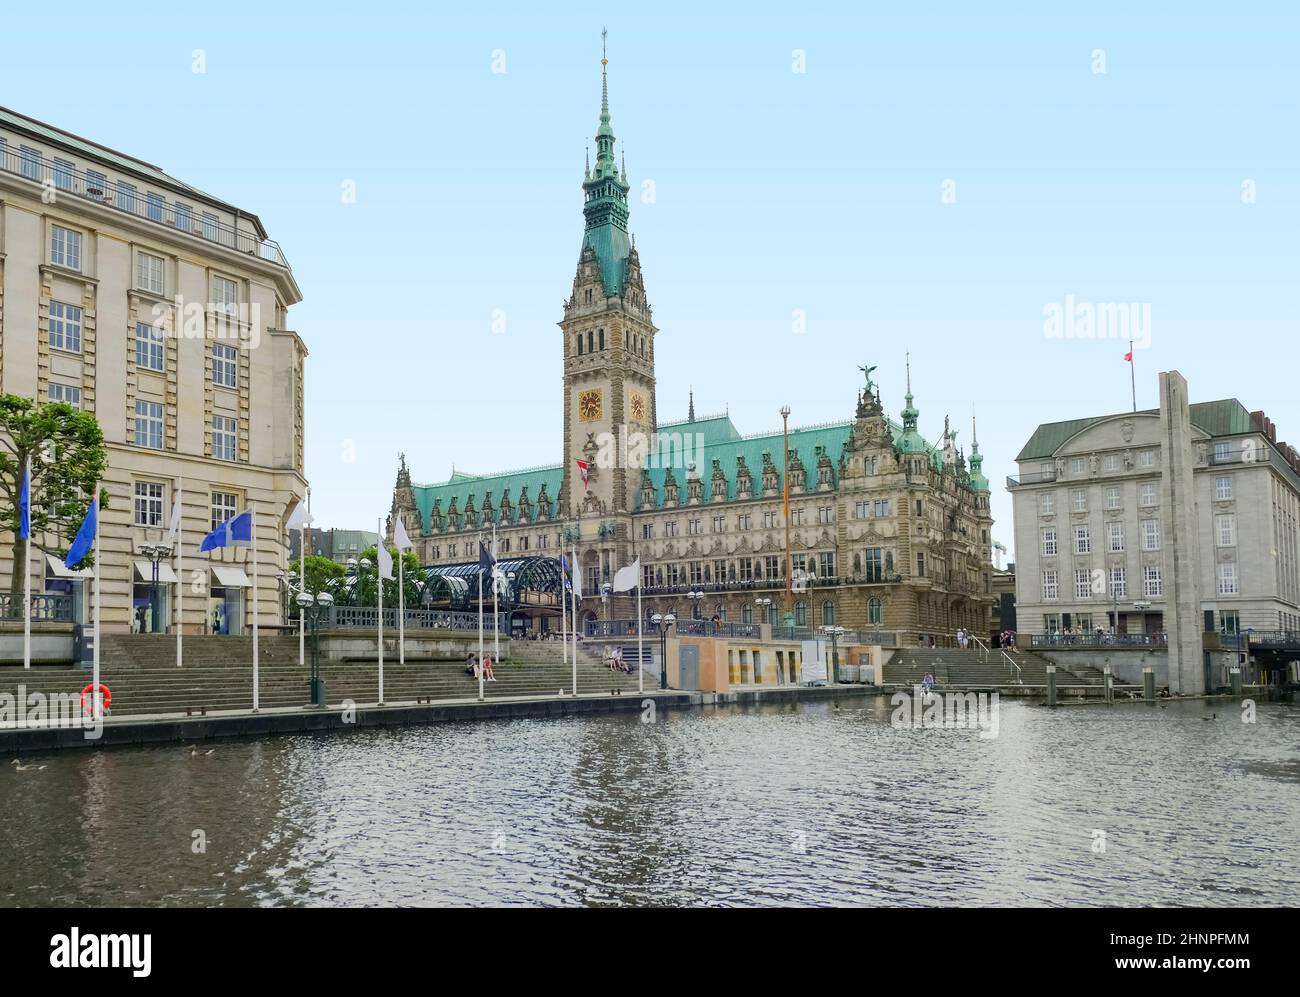 Scenery around the Inner Alster Lake in Hamburg, Germany Stock Photo